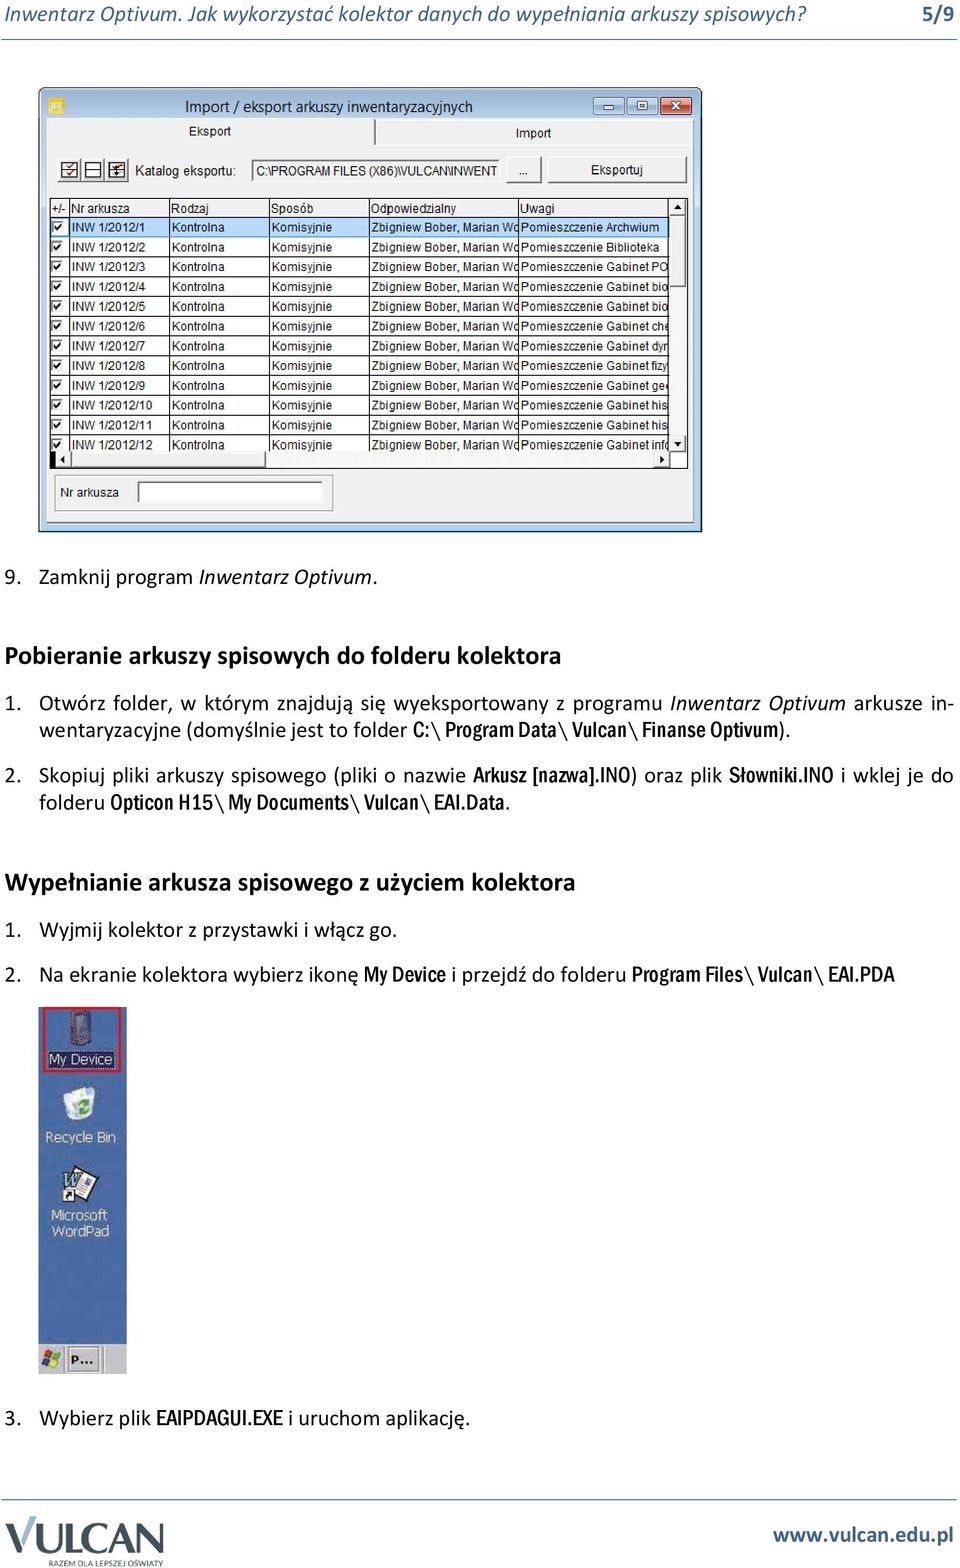 Skopiuj pliki arkuszy spisowego (pliki o nazwie Arkusz [nazwa].ino) oraz plik Słowniki.INO i wklej je do folderu Opticon H15\ My Documents\ Vulcan\ EAI.Data.